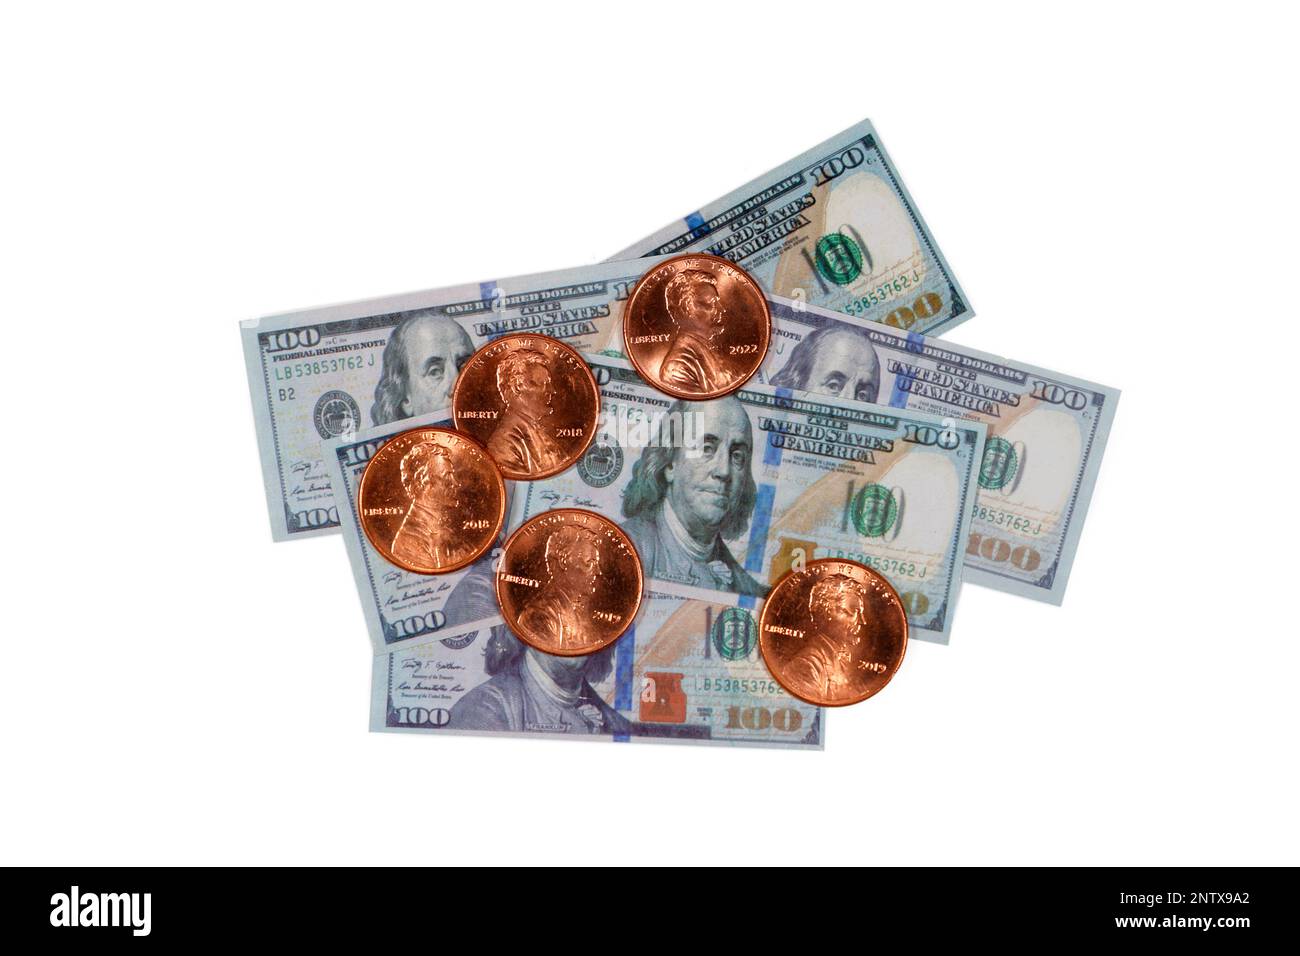 Dollars et cents. Des pennies américaines sur le dessus de la réplique miniature de cent billets de dollars découpe sur un fond blanc pour une utilisation éditoriale, illustrative Banque D'Images